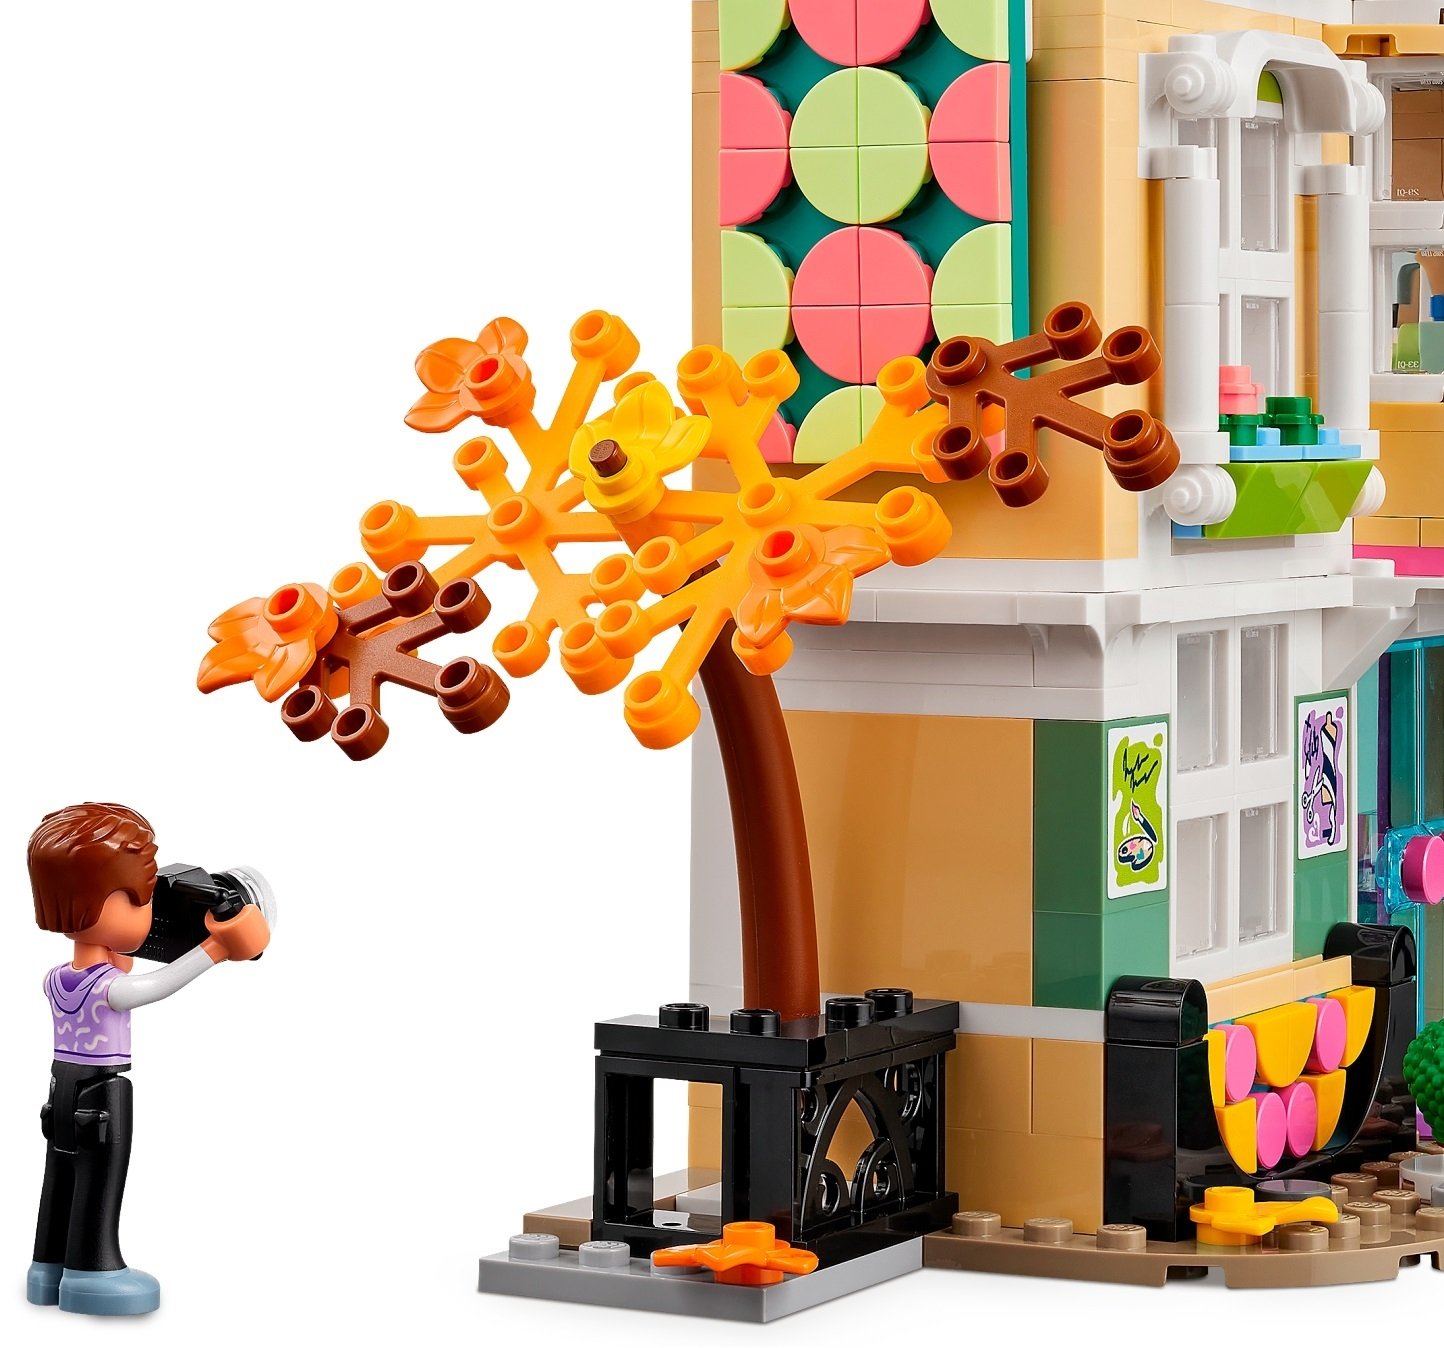 День рождения в стиле LEGO: идеи для яркого детского праздника